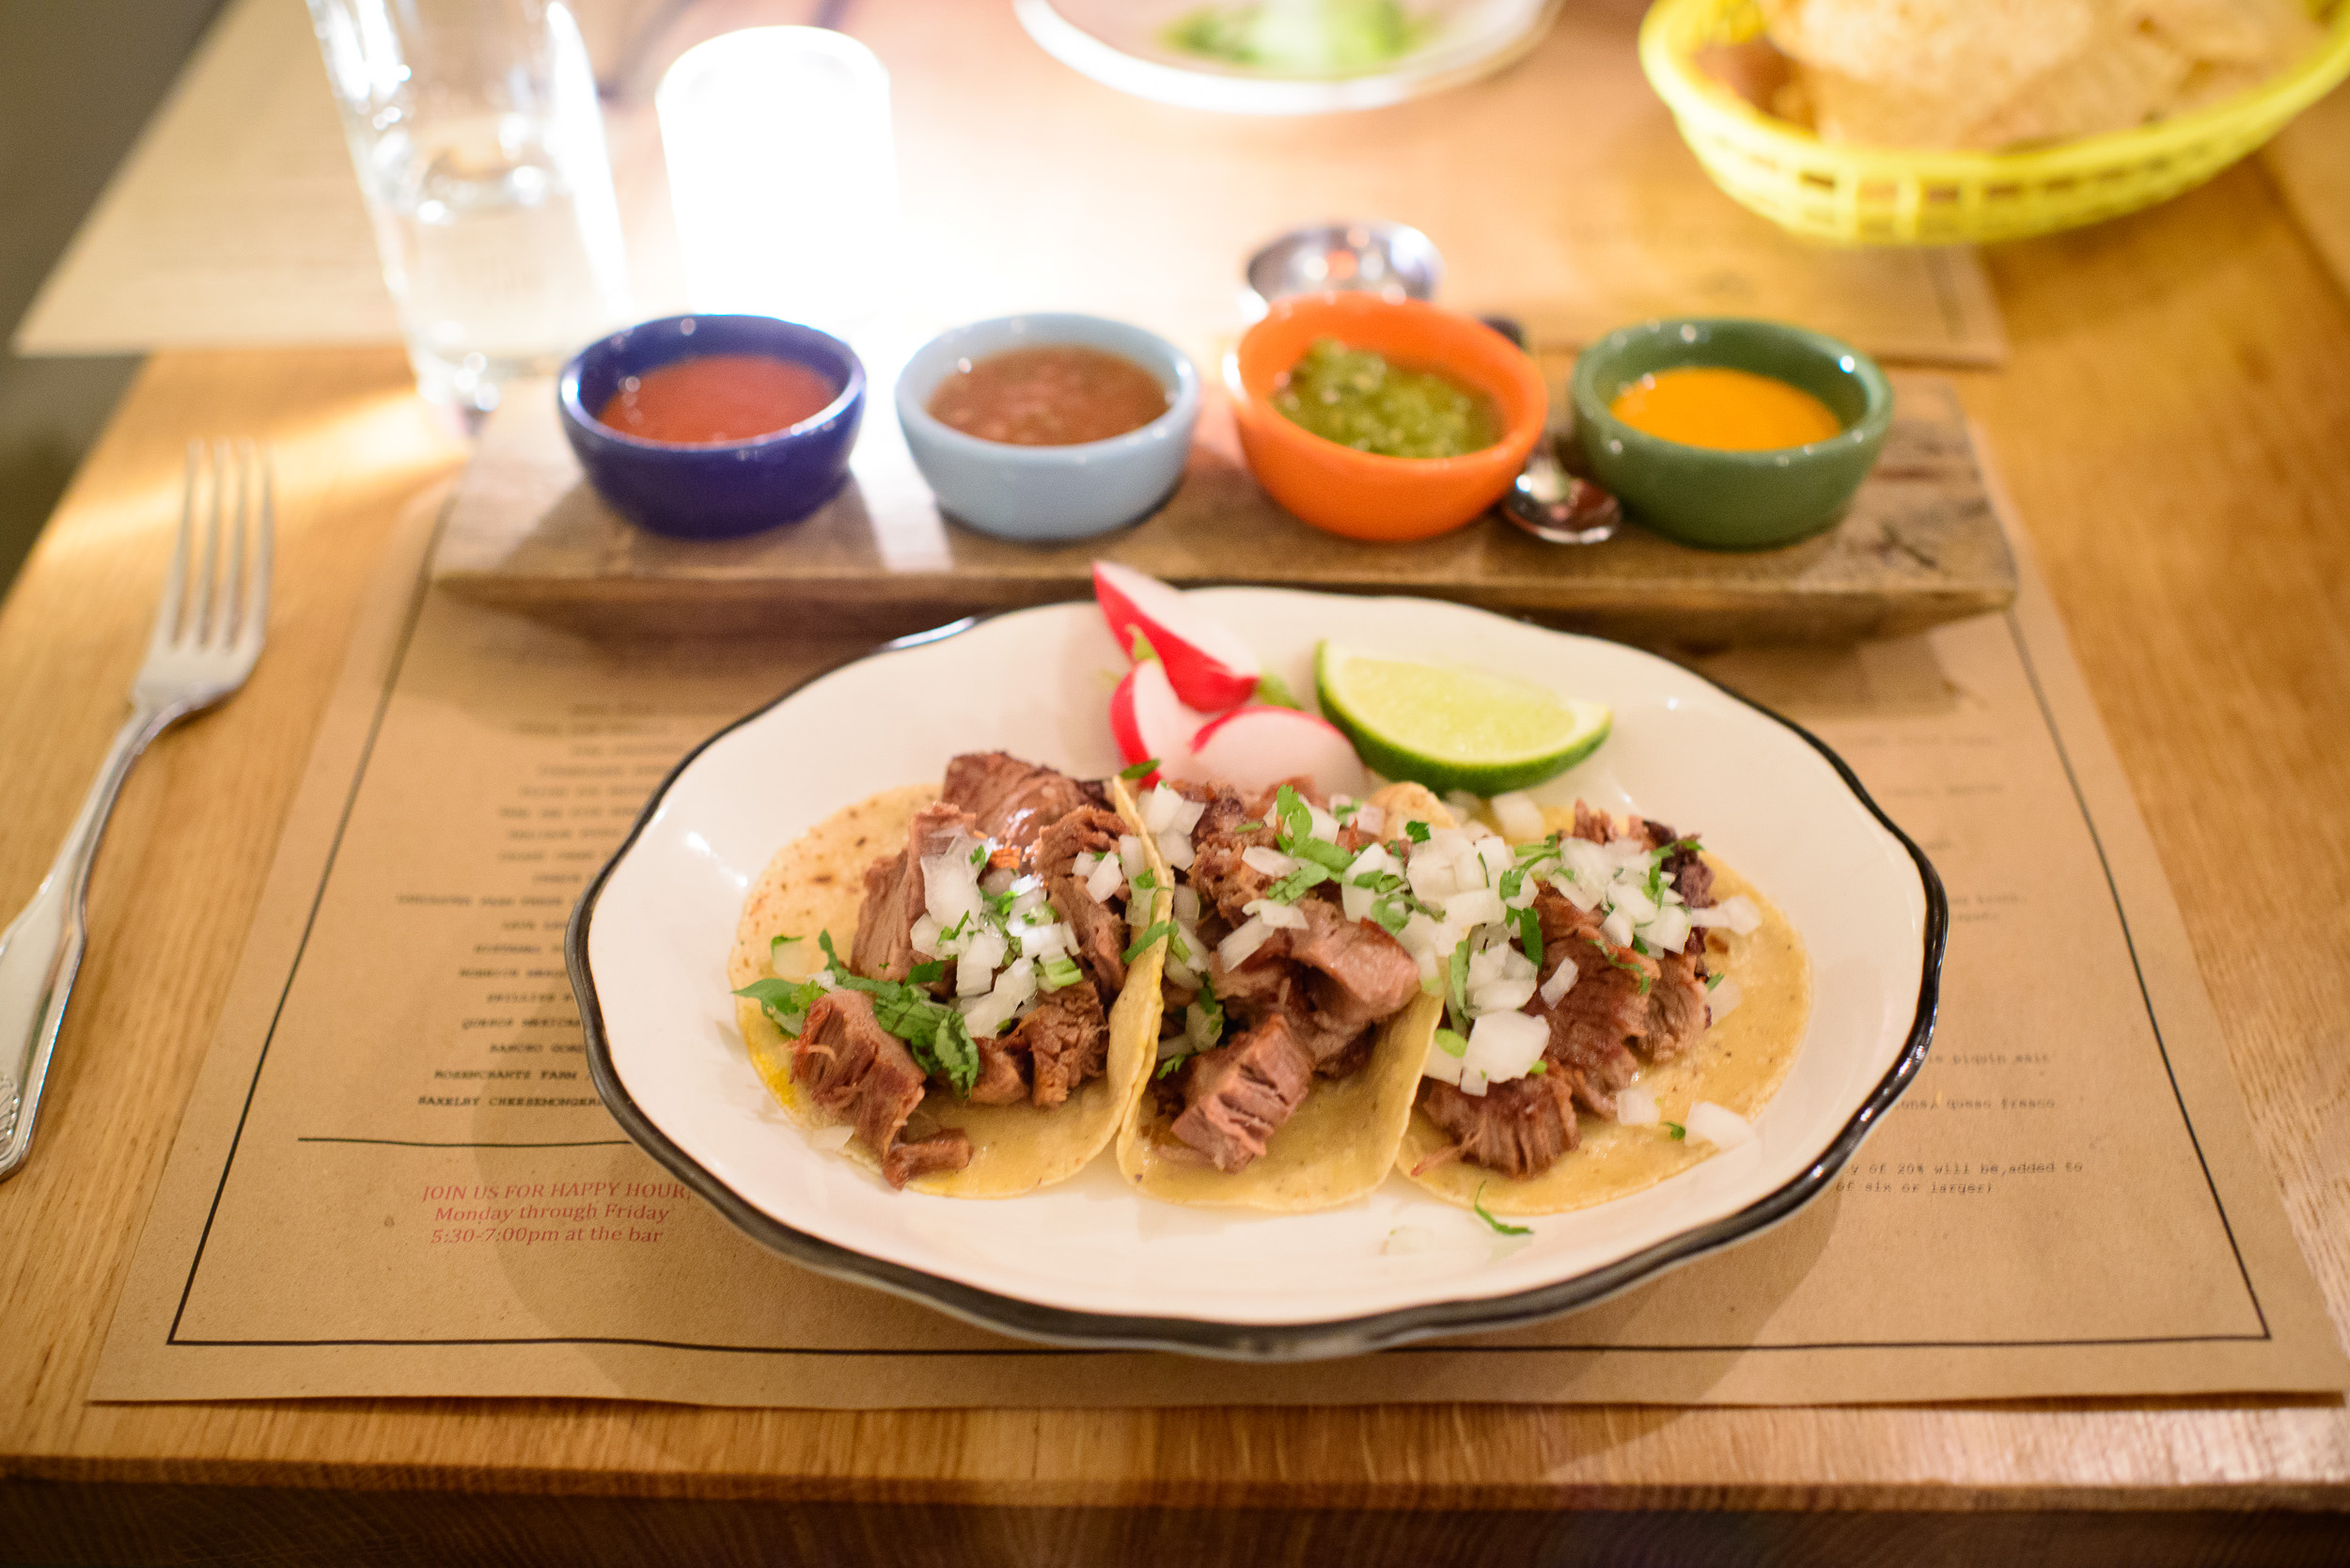 Tacos de suadero - beef brisket, onion, cilantro ($7)